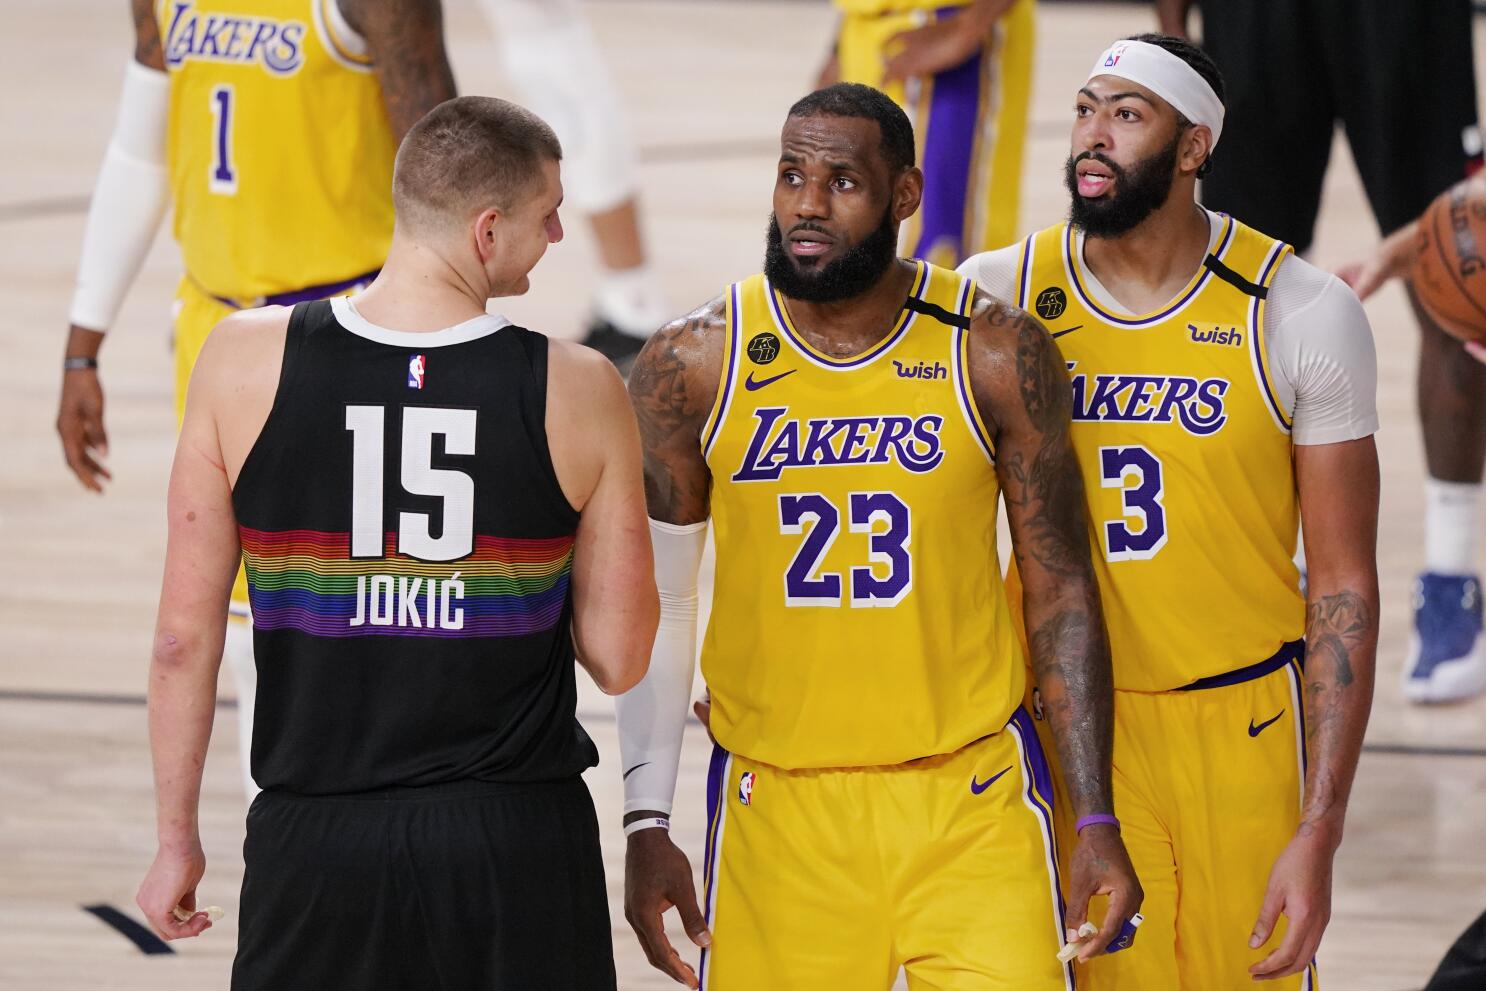 LA Lakers vs Denver Nuggets Comparisons Are Now Futile After the Latest Match